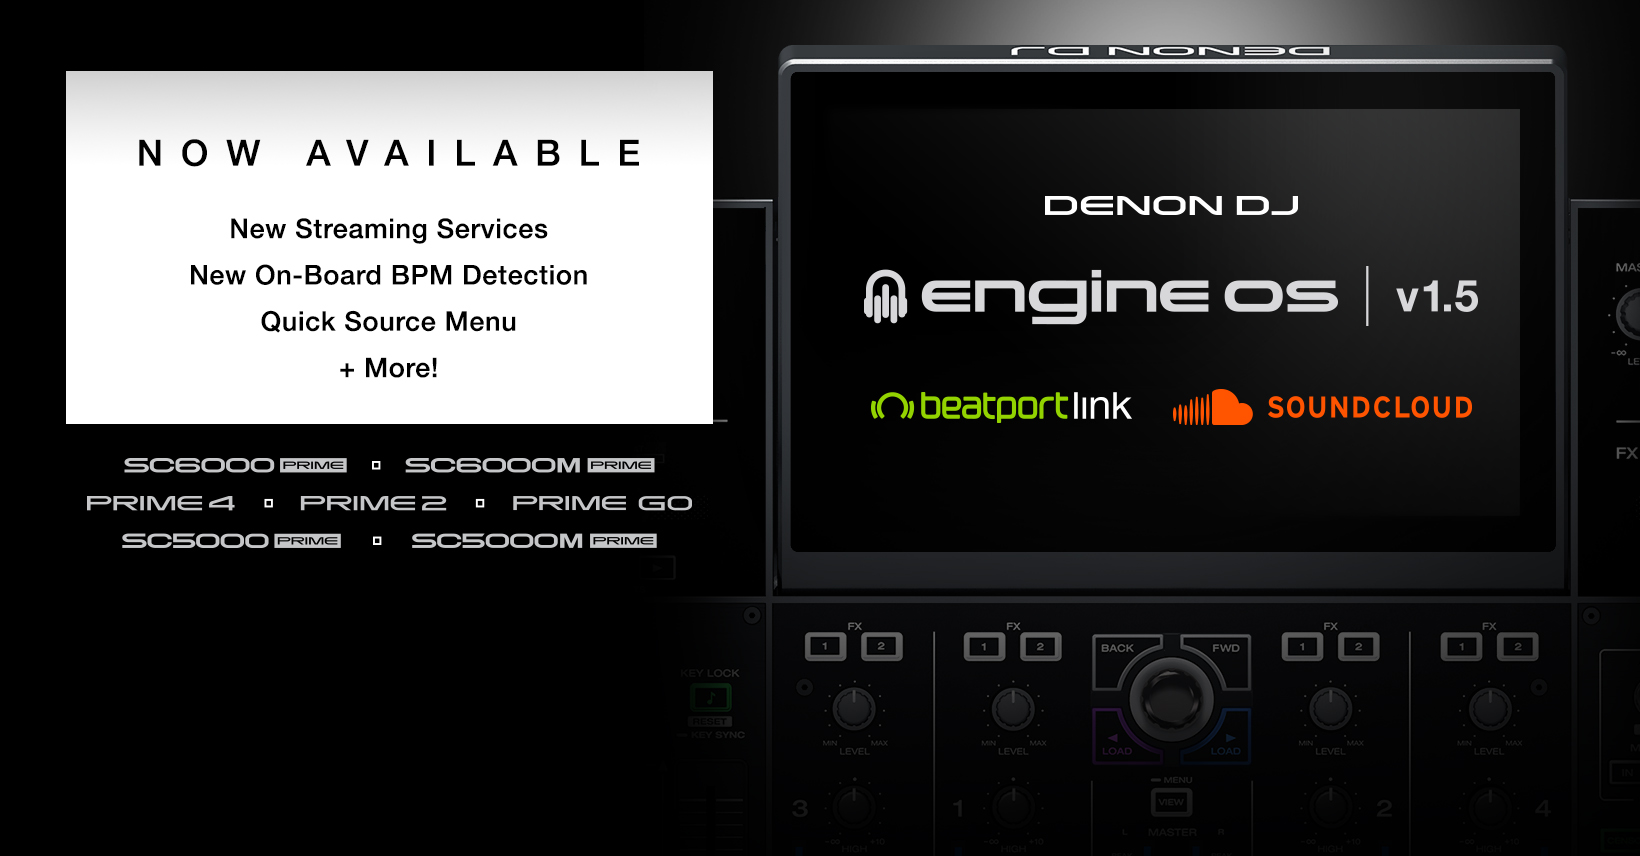 Engine OS 1.5 de Denon DJ compatible con Soundcloud GO+ y Beatport LINK